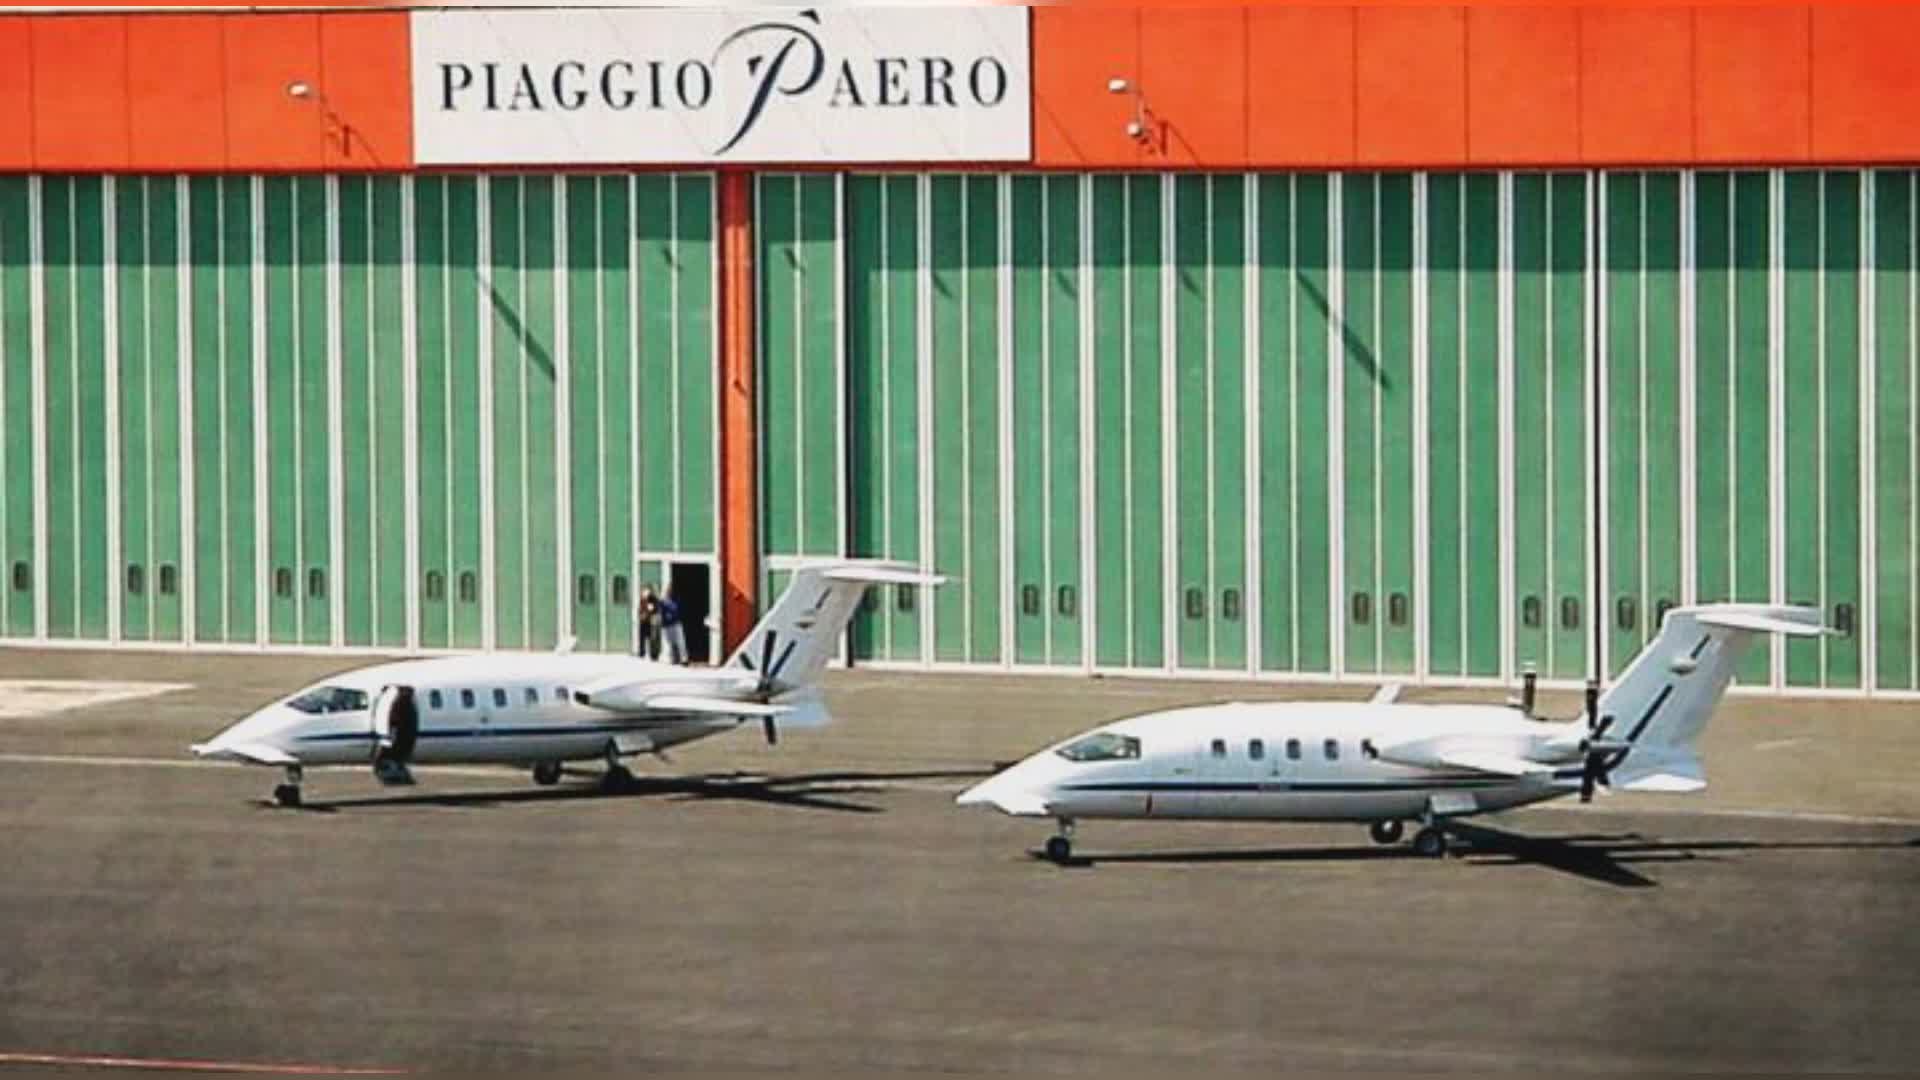 Piaggio: Aeroporto di Genova a confronto con il Comune per valutare sviluppo industriale all'interno dello scalo